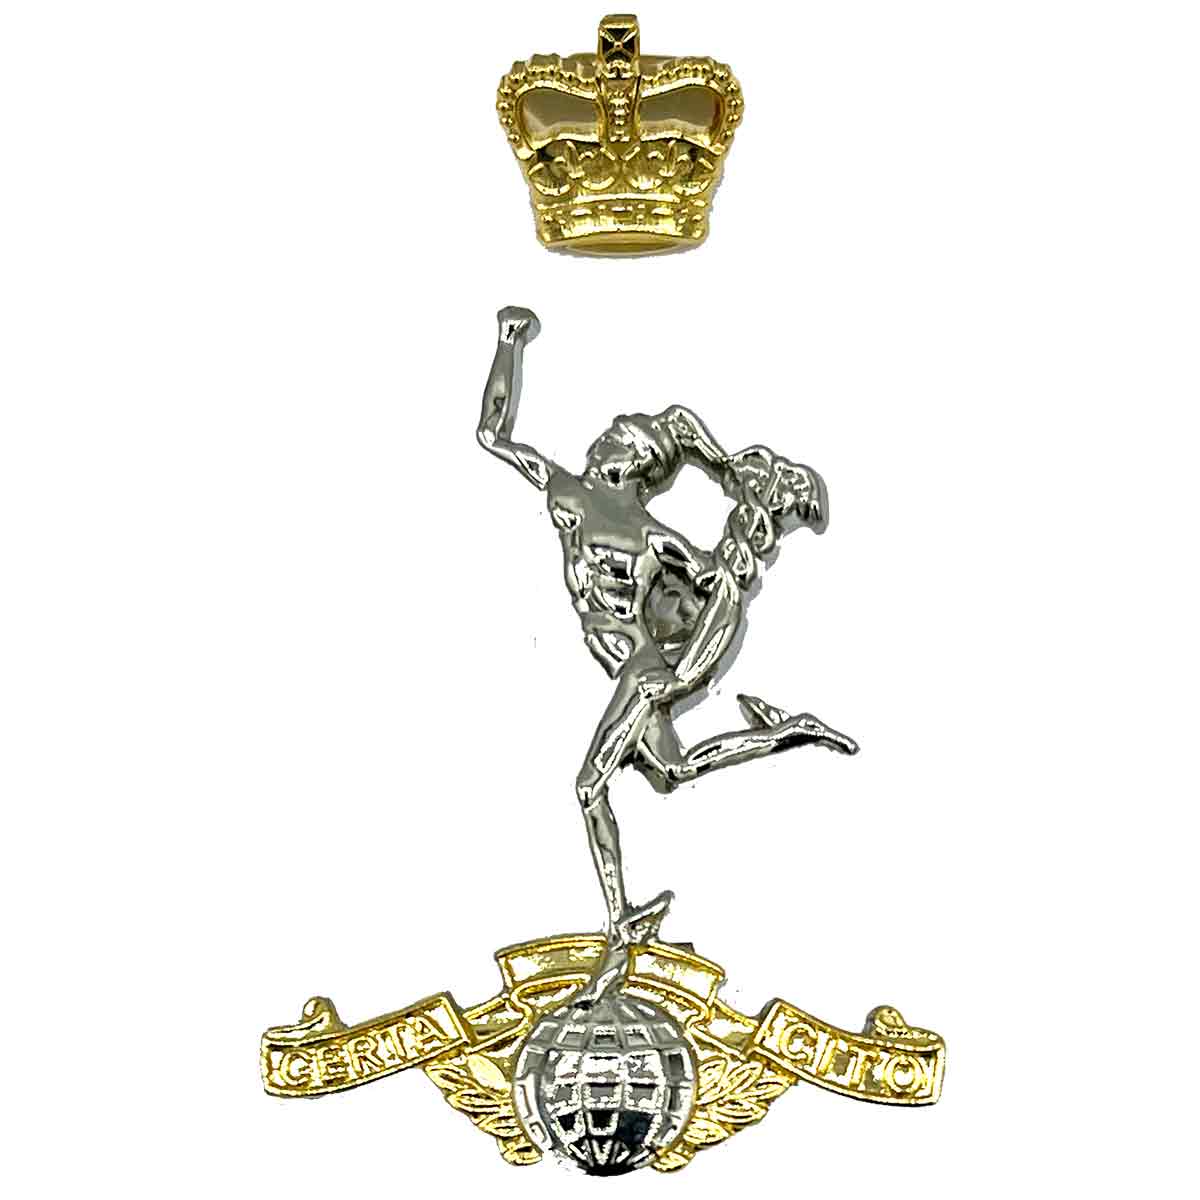 Royal Signals Beret Cap Badge - John Bull Clothing